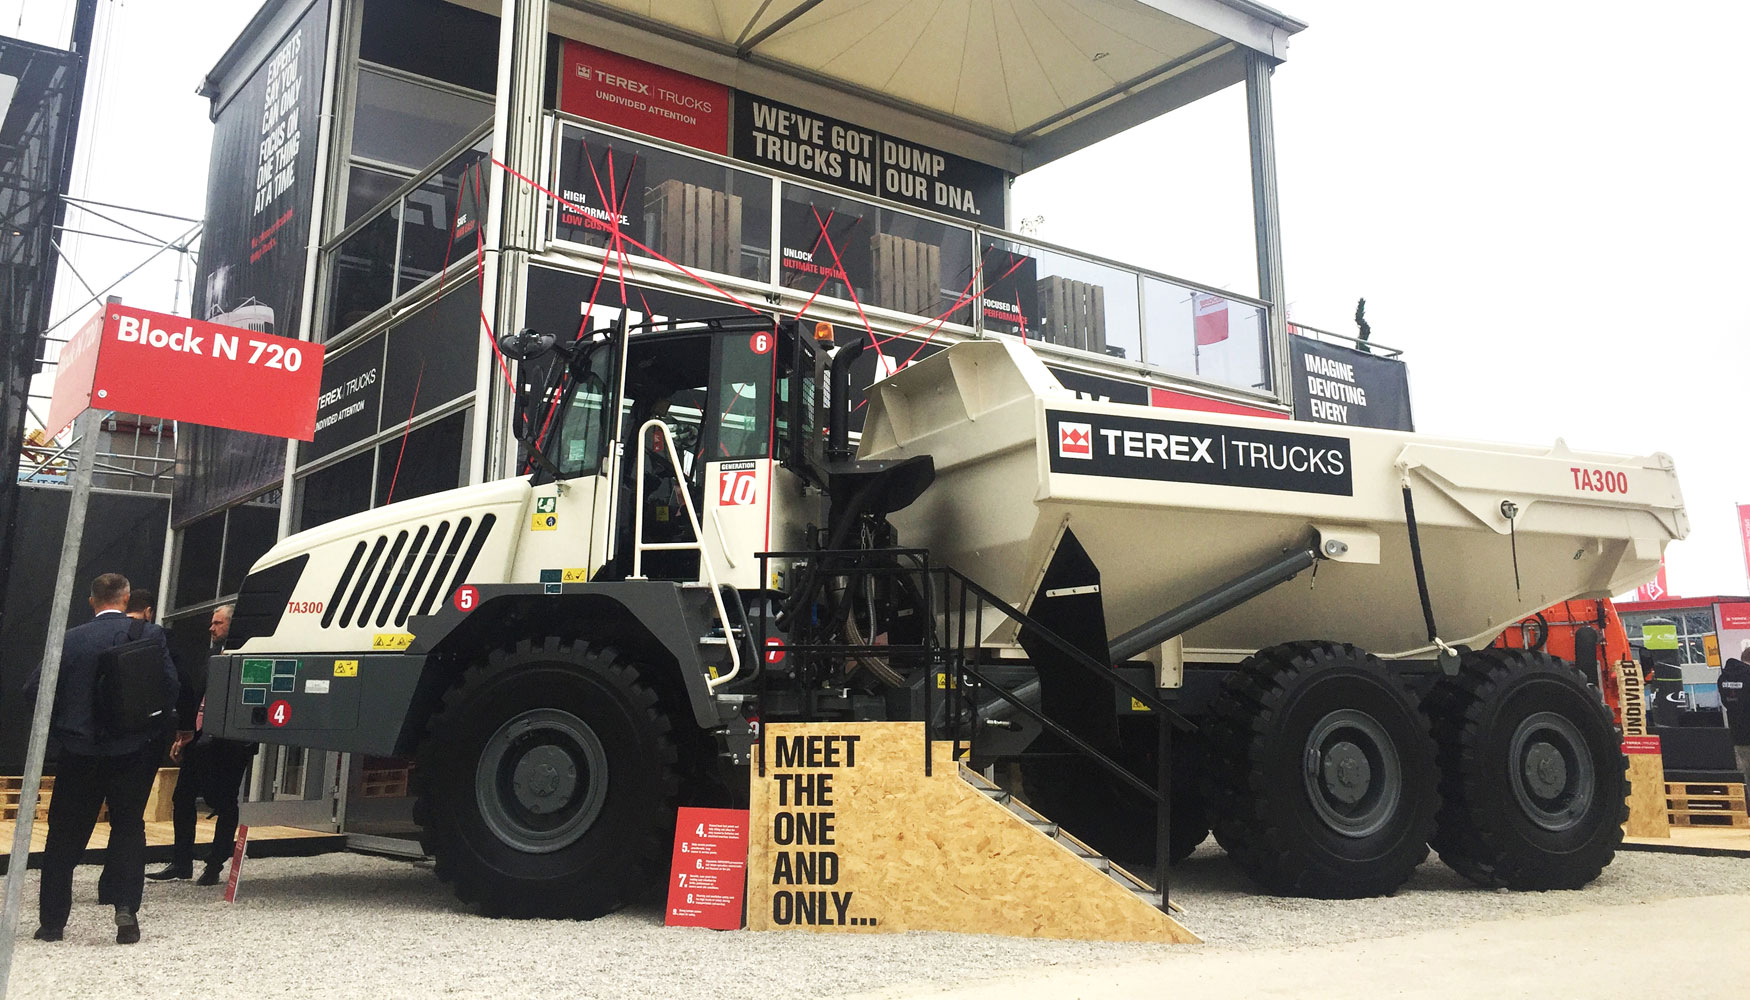 Dumper articulado TA300 en el stand de Terex Trucks en Bauma 2019